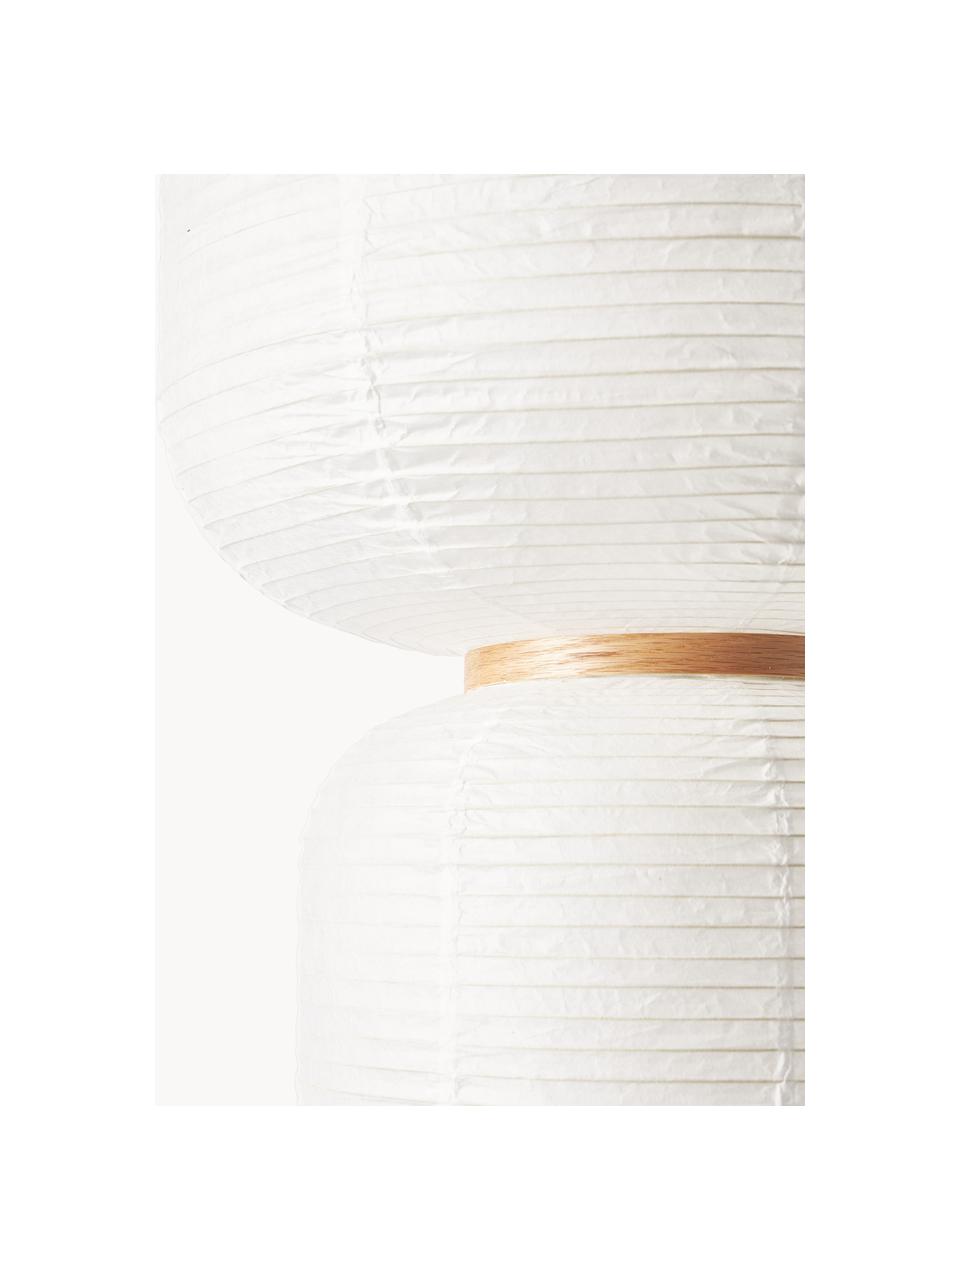 Lampa wisząca z papieru ryżowego Misaki, Biały, jasne drewno naturalne, Ø 40 x W 70 cm